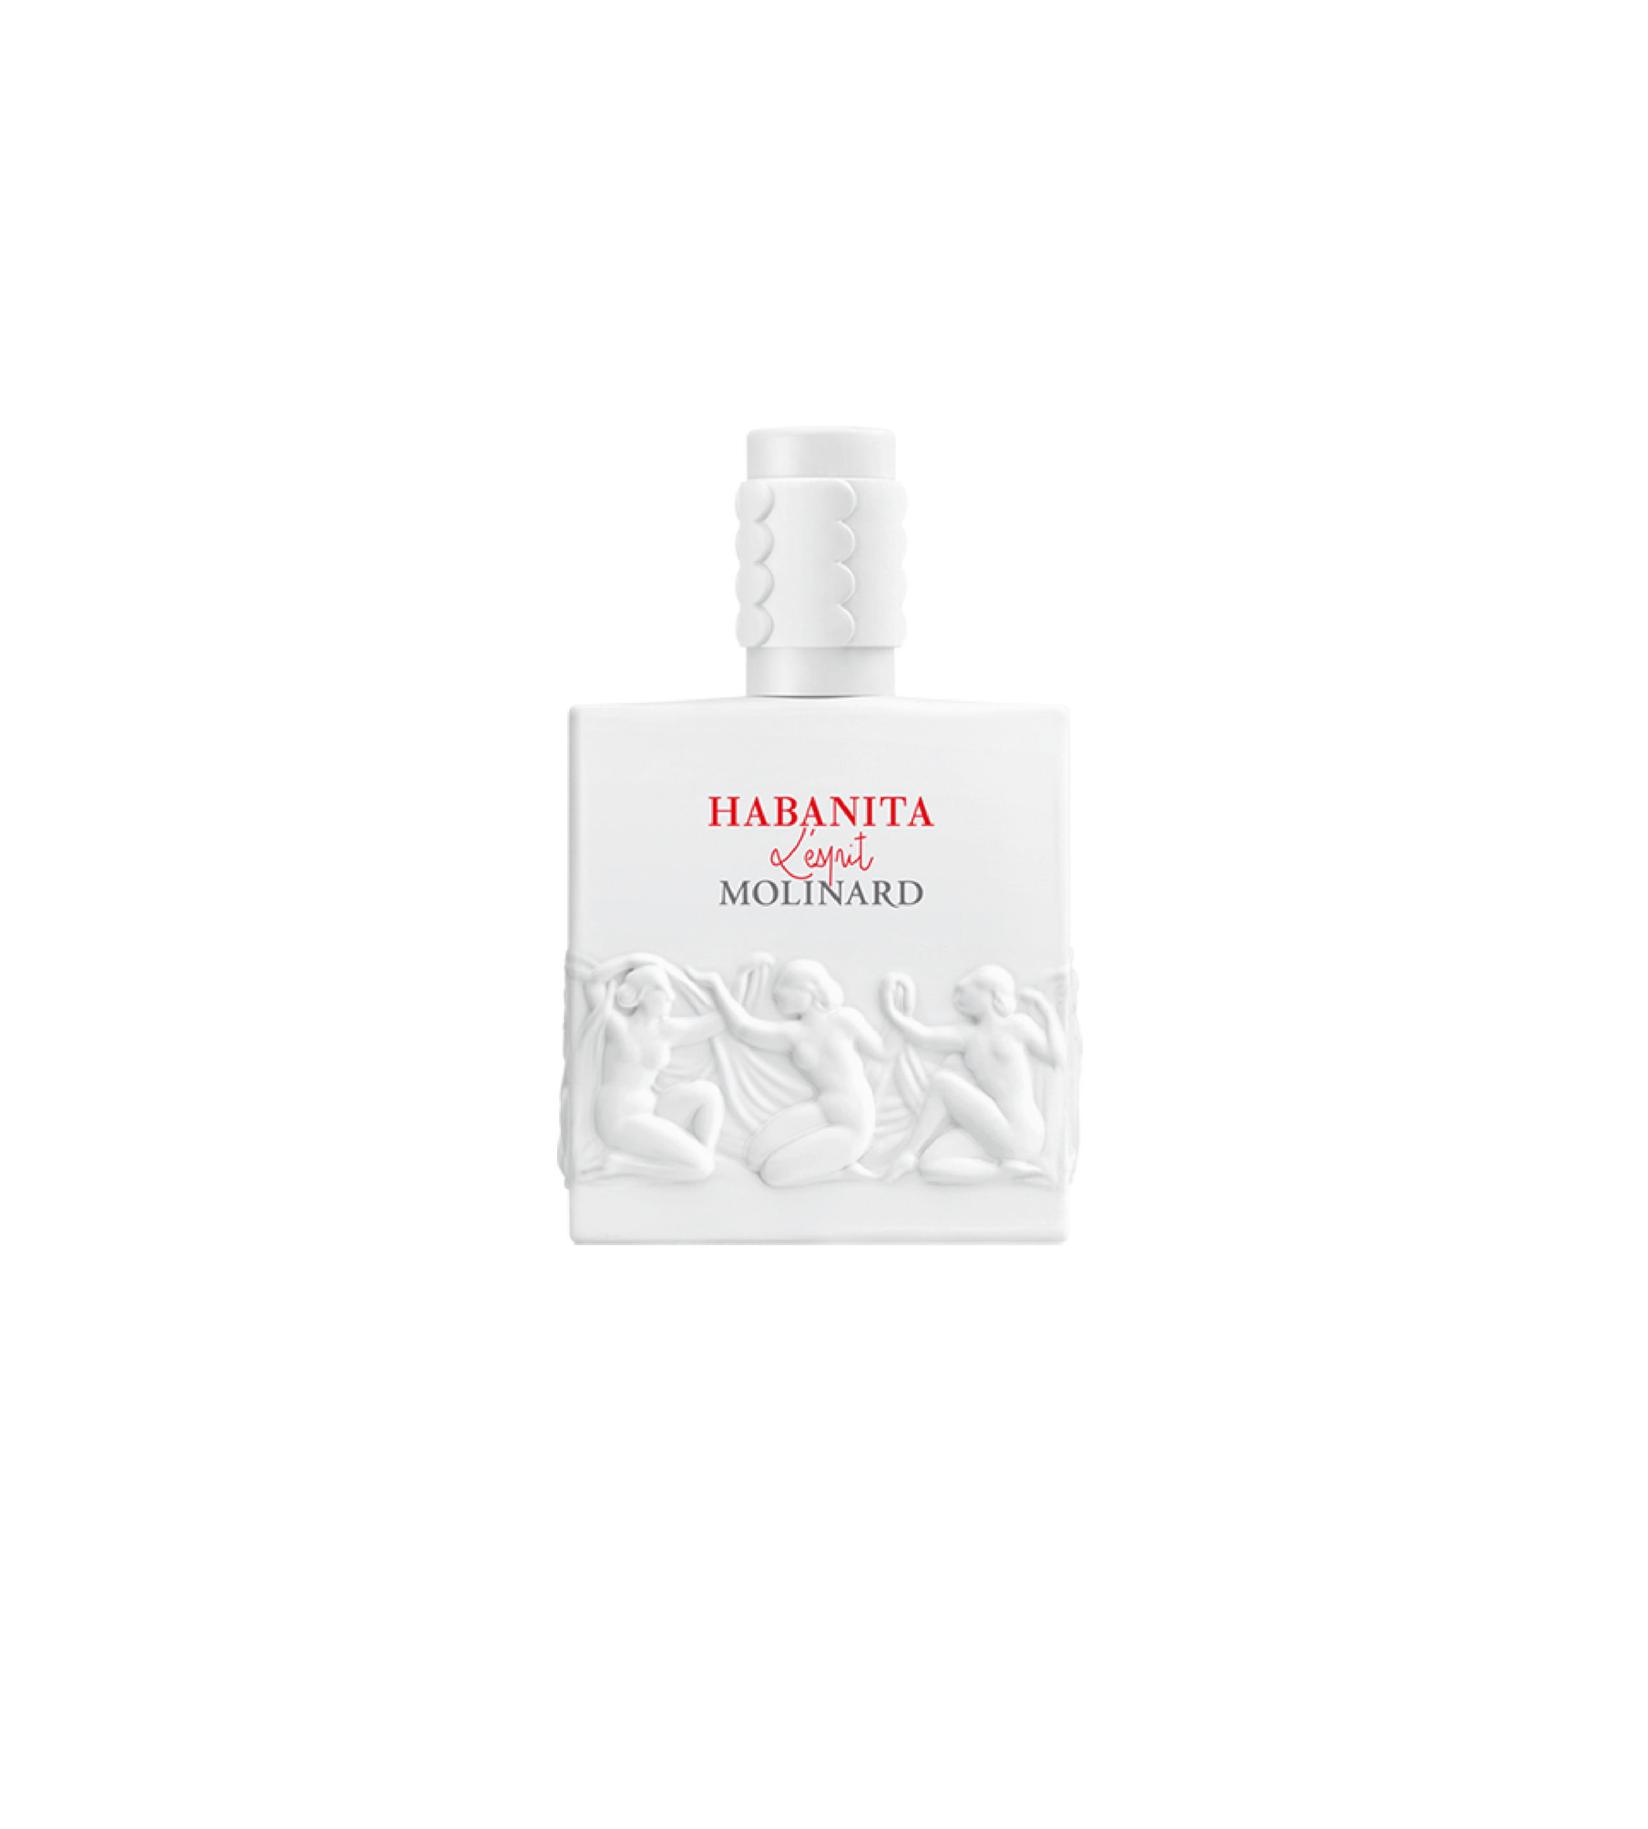 MOLINARD Ženski parfem Habanita L'Esprit 75ml